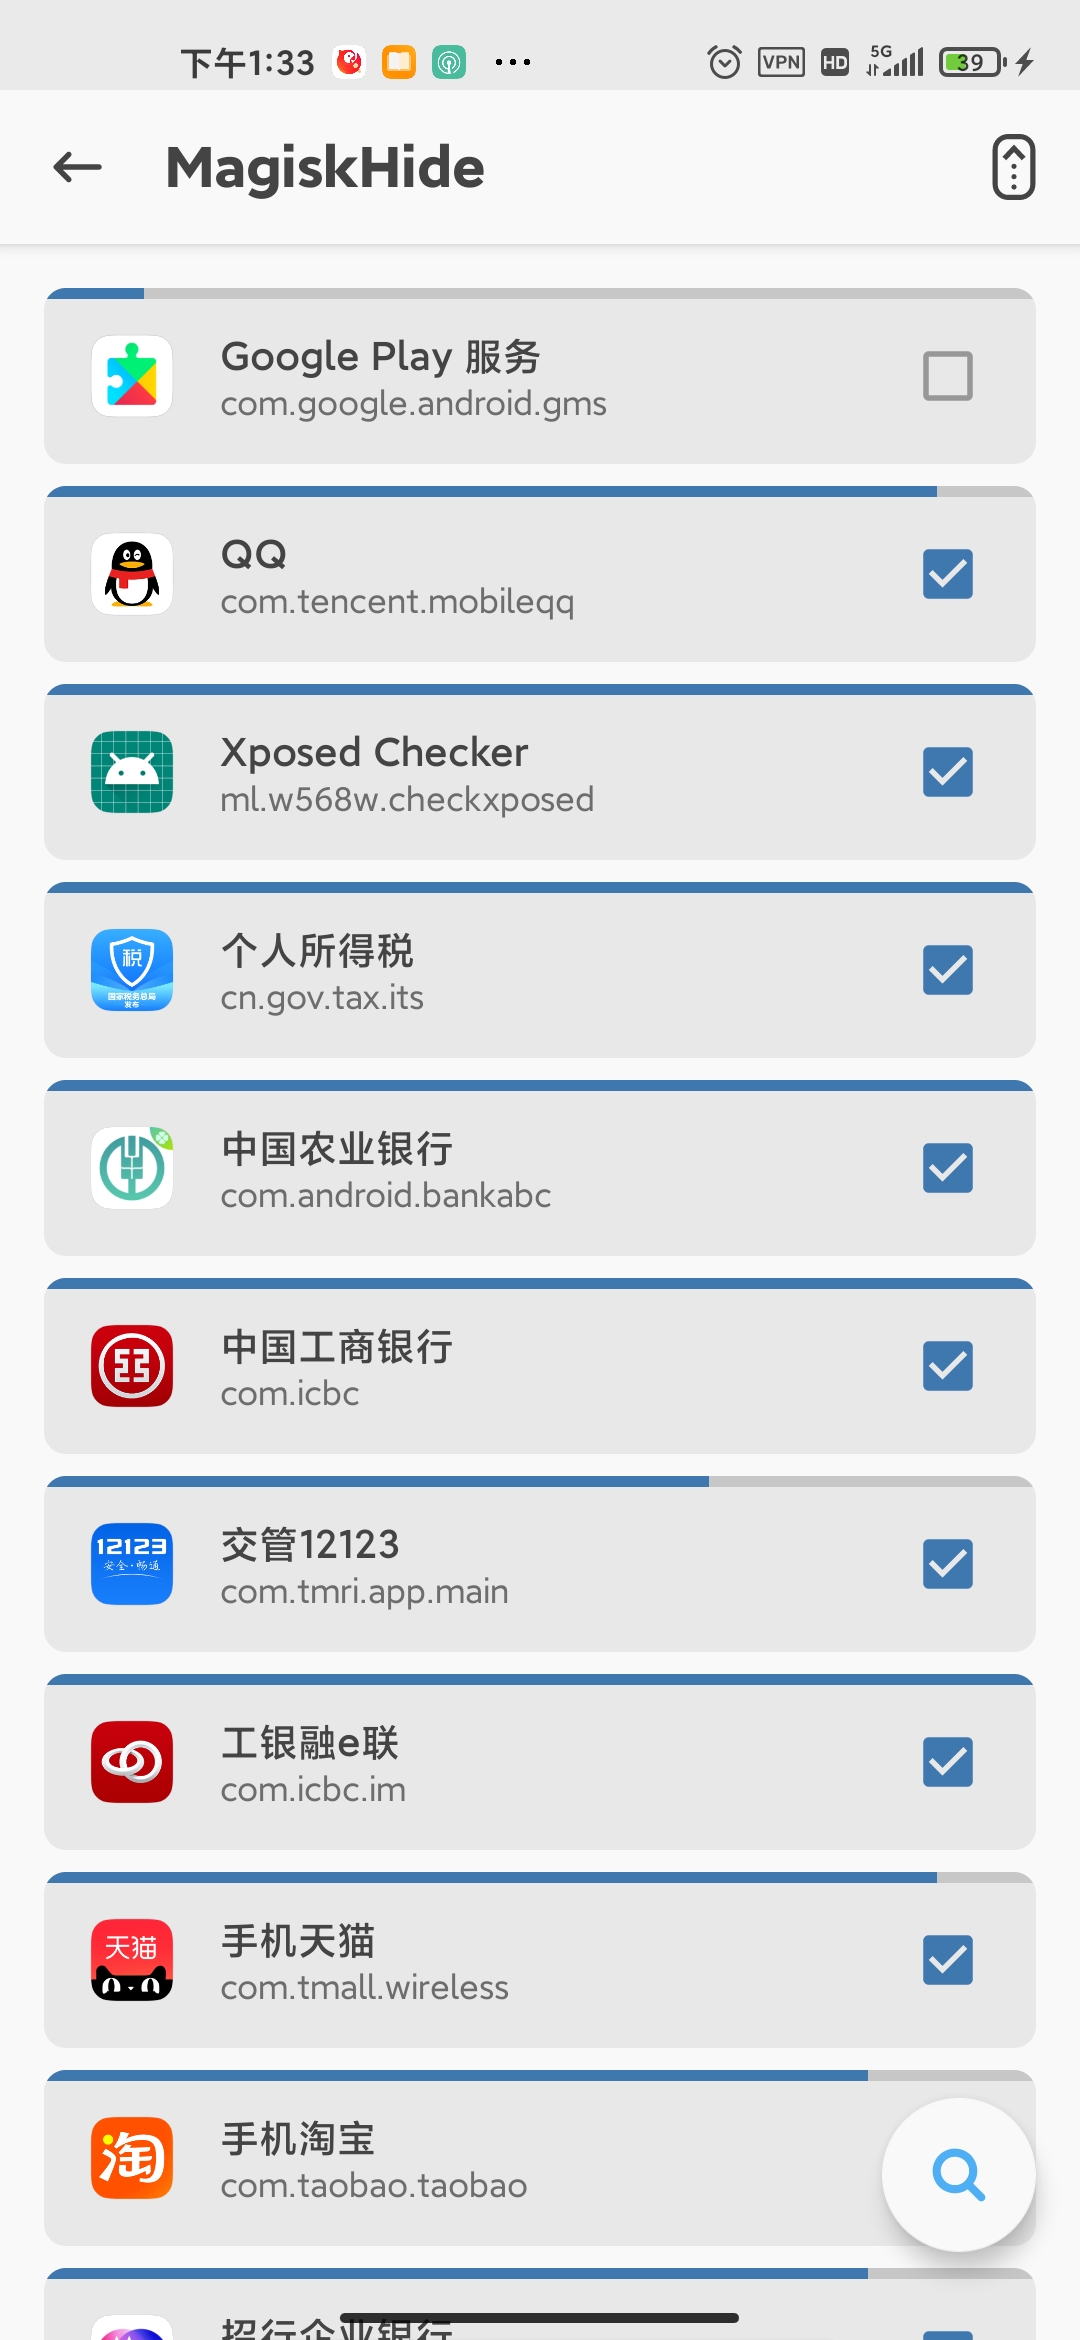 安卓root之后交管12312320秒闪退和中国农业银行app60闪退的解决方法